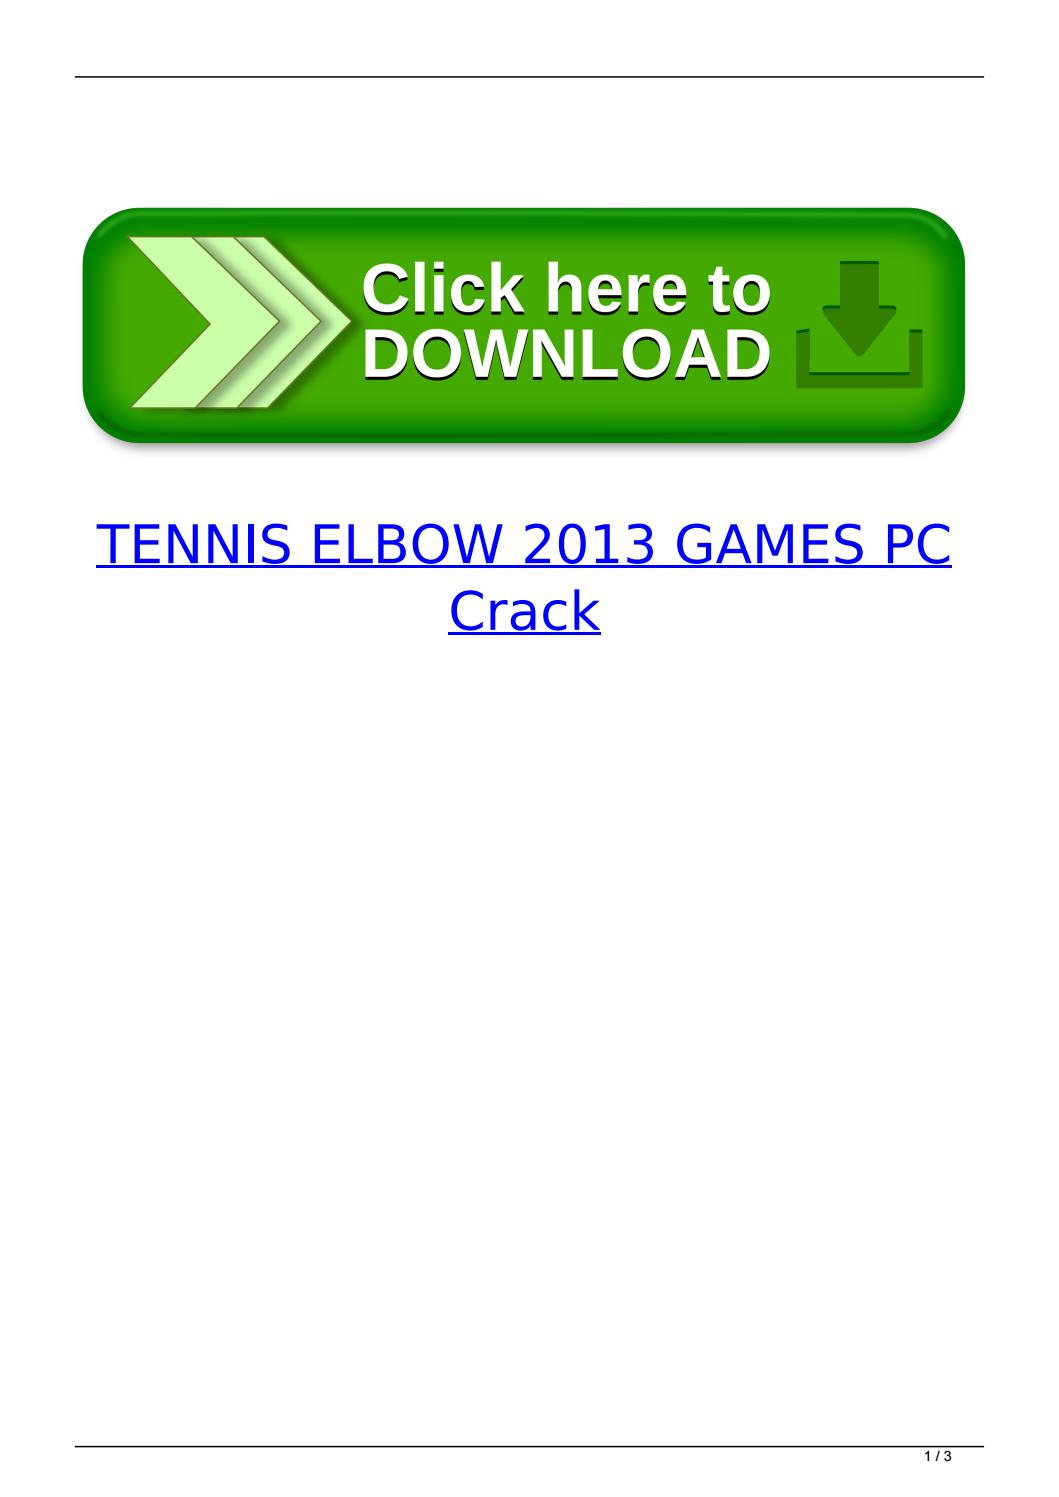 TENNIS ELBOW 2013 GAMES PC crack